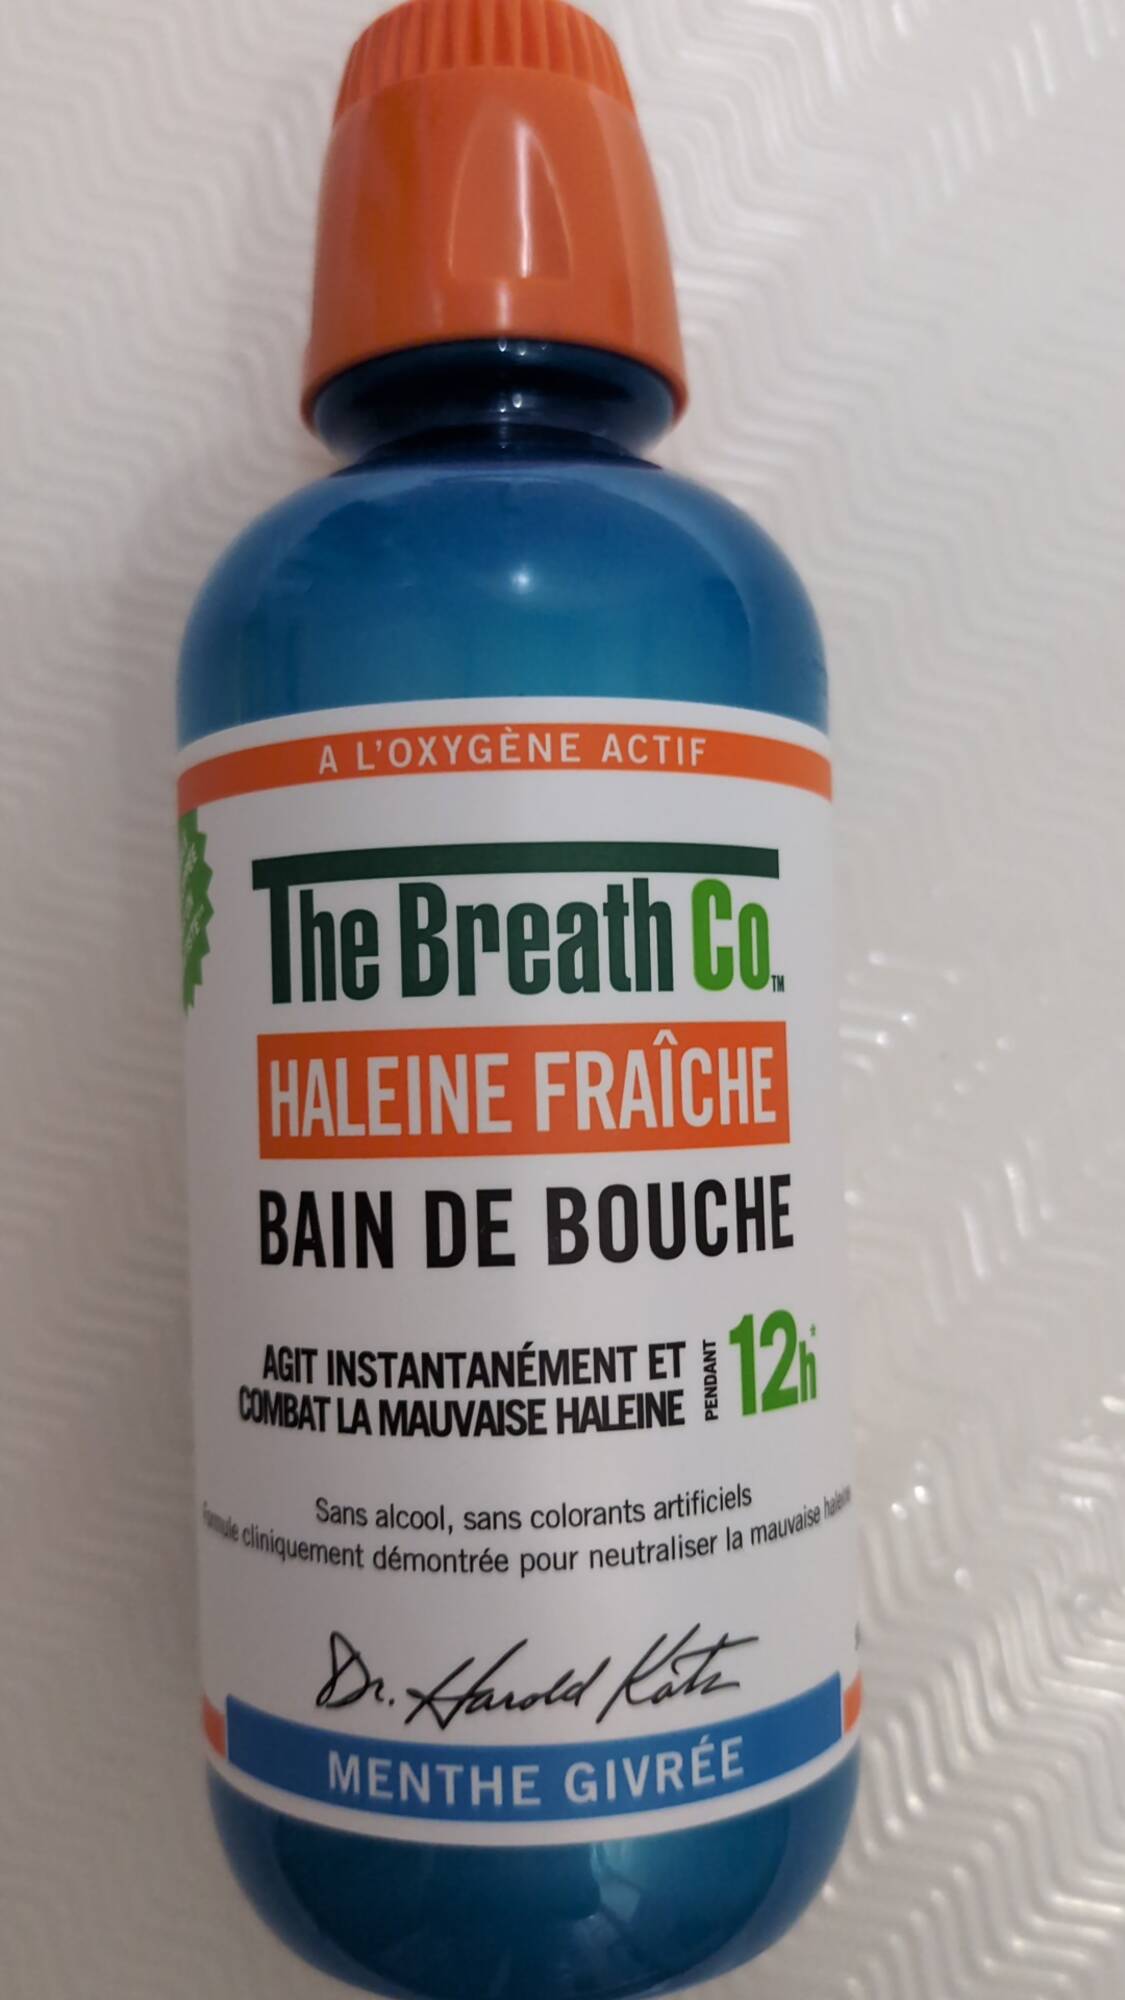 THE BREATH CO. - Haleine fraîche - Bain de bouche 12h menthe givrée